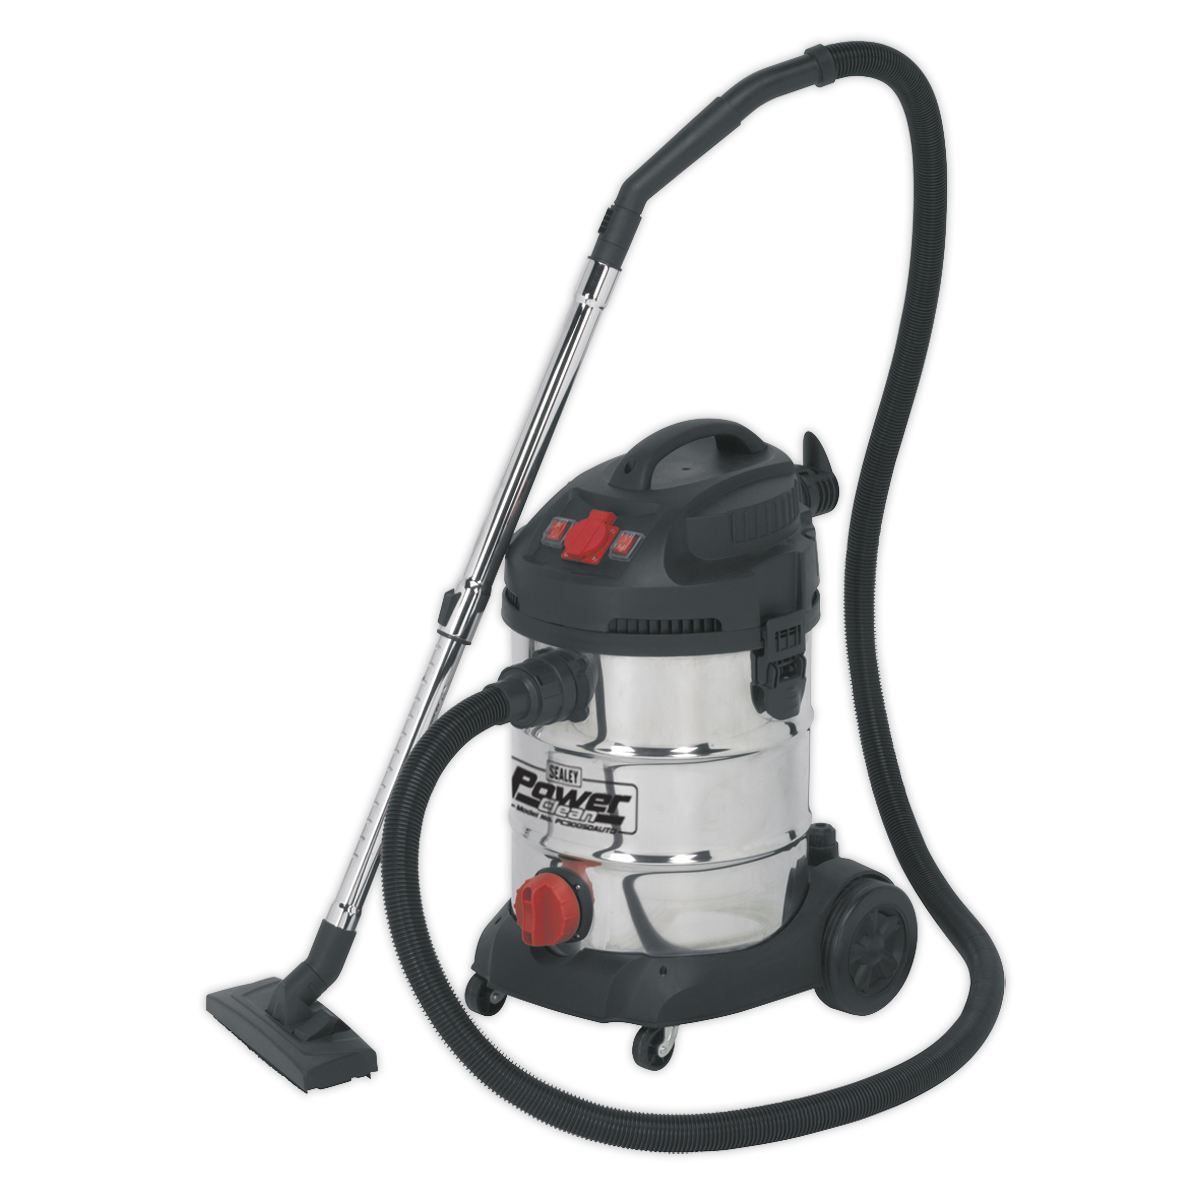 Sealey powerful vacuum cleaner